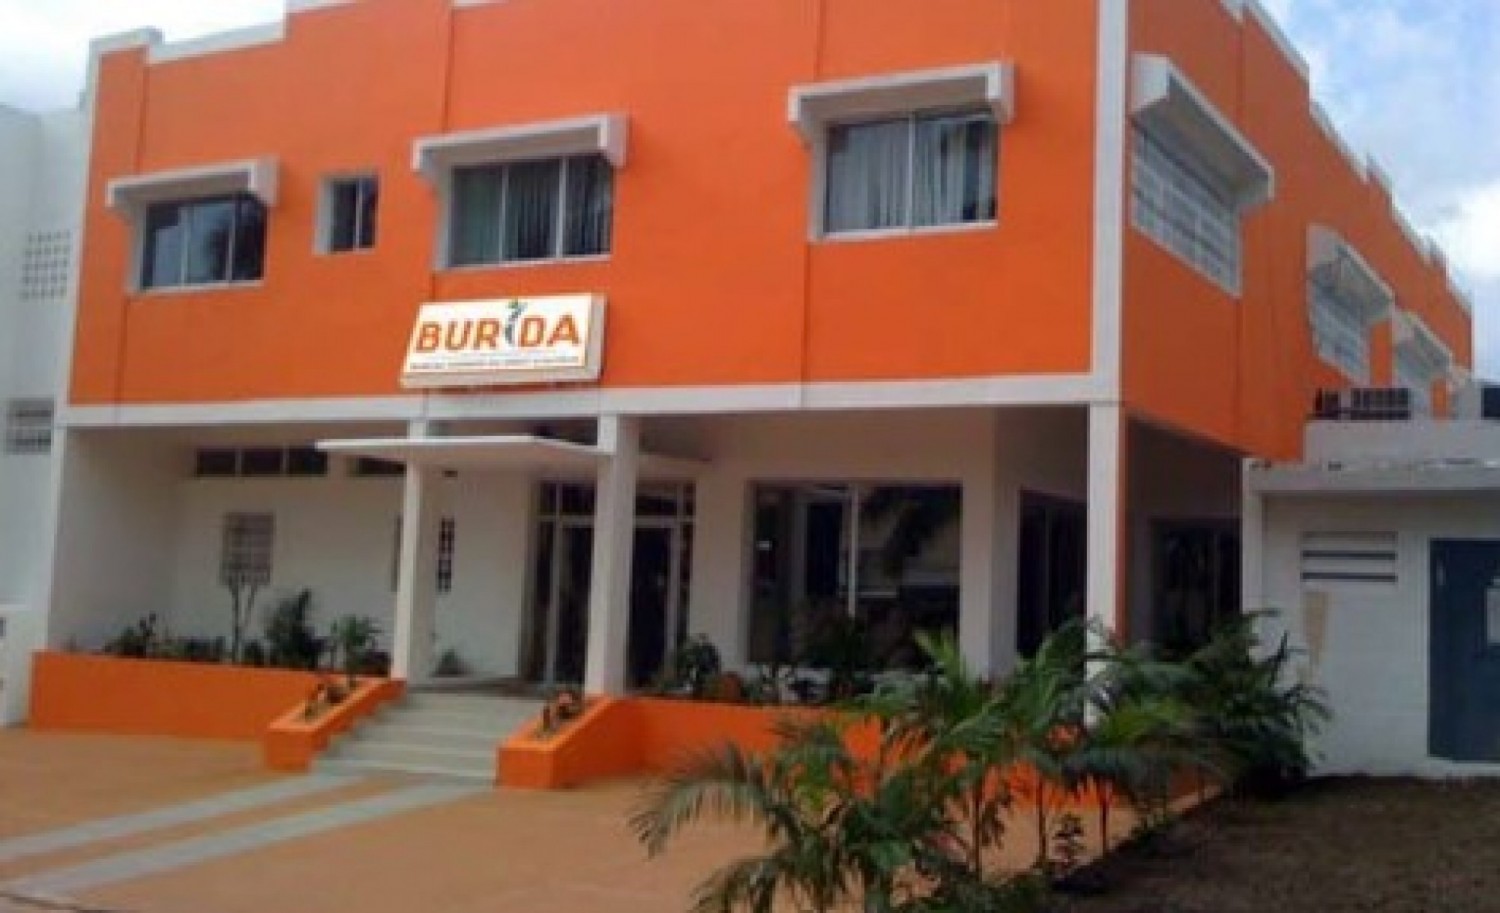 Côte d'Ivoire : Collaboration BURIDA et faîtières de l'industrie touristique, un atelier annoncé pour aplanir les divergences et trouver un consensus d'applicabilité de la grille tarifaire